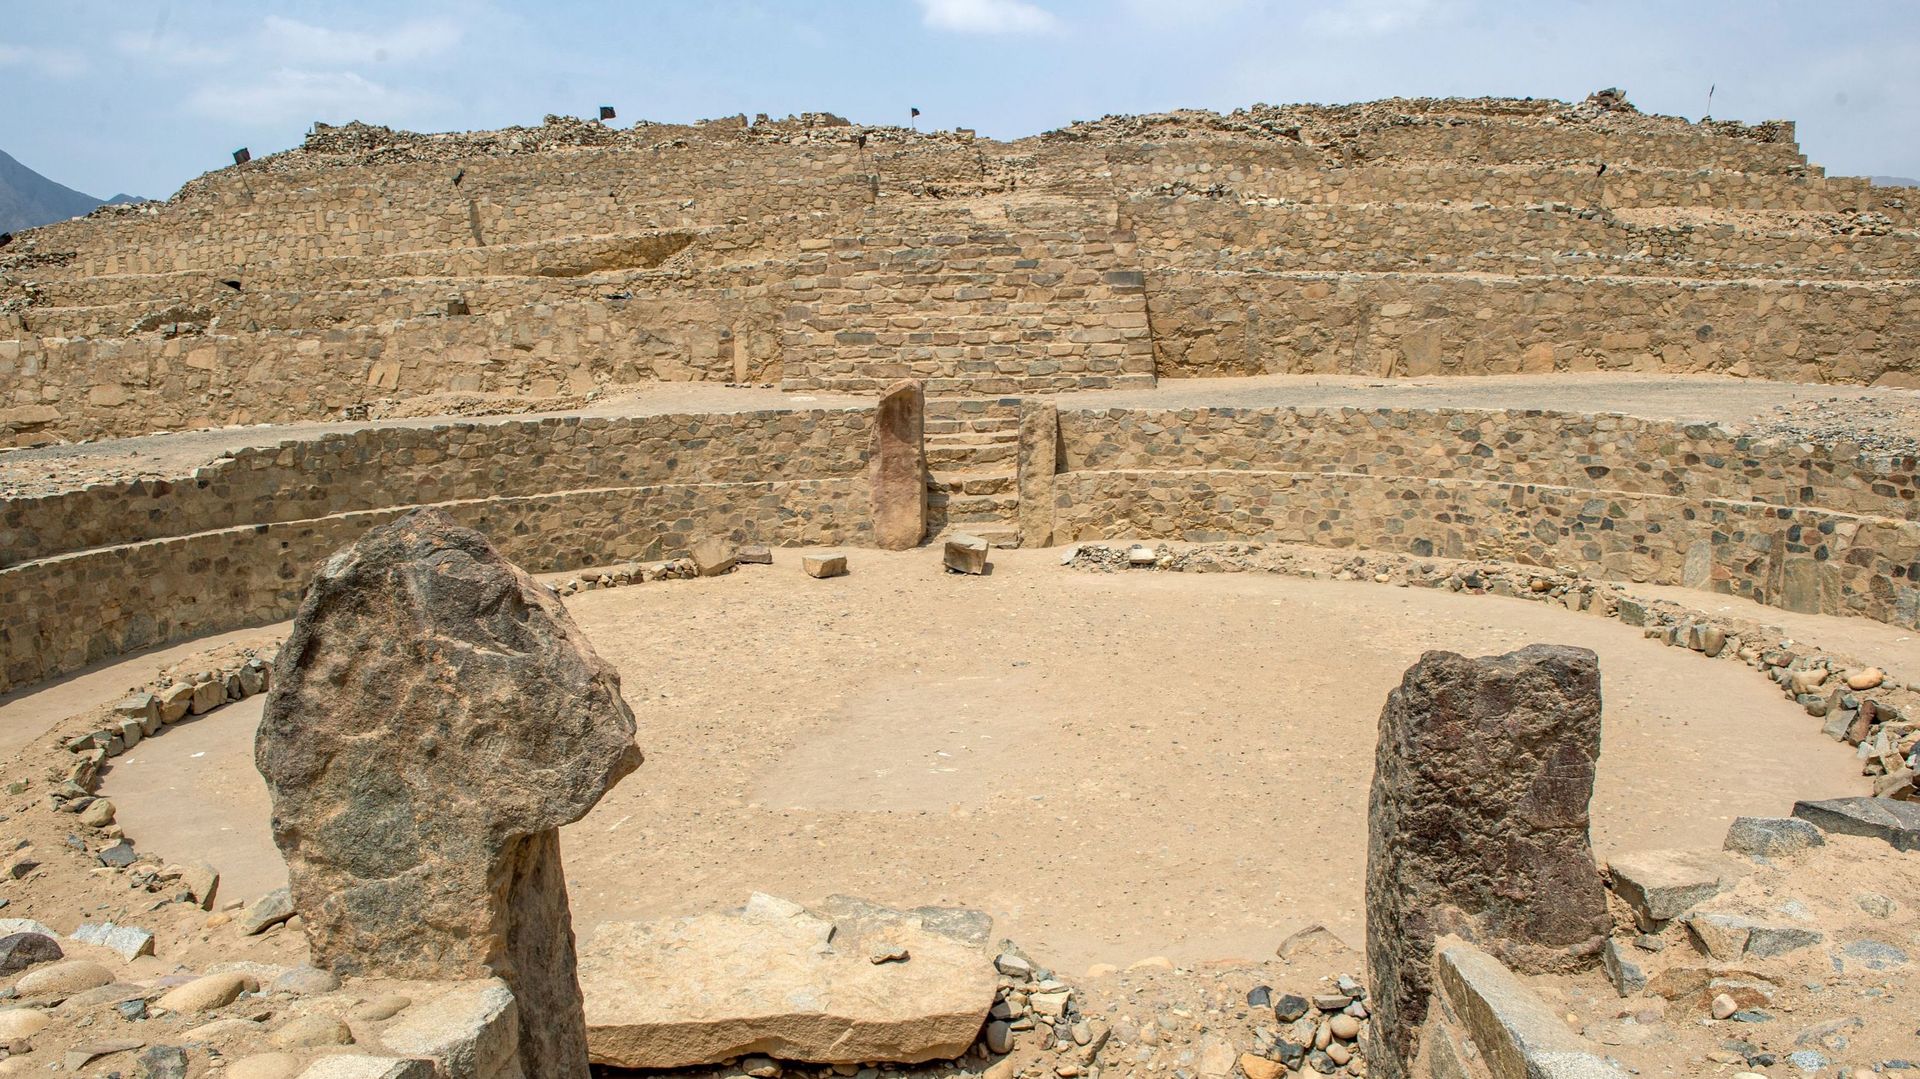 Pérou : Caral, cité archéologique vieille de 5000 ans, menacée par des constructions illégales